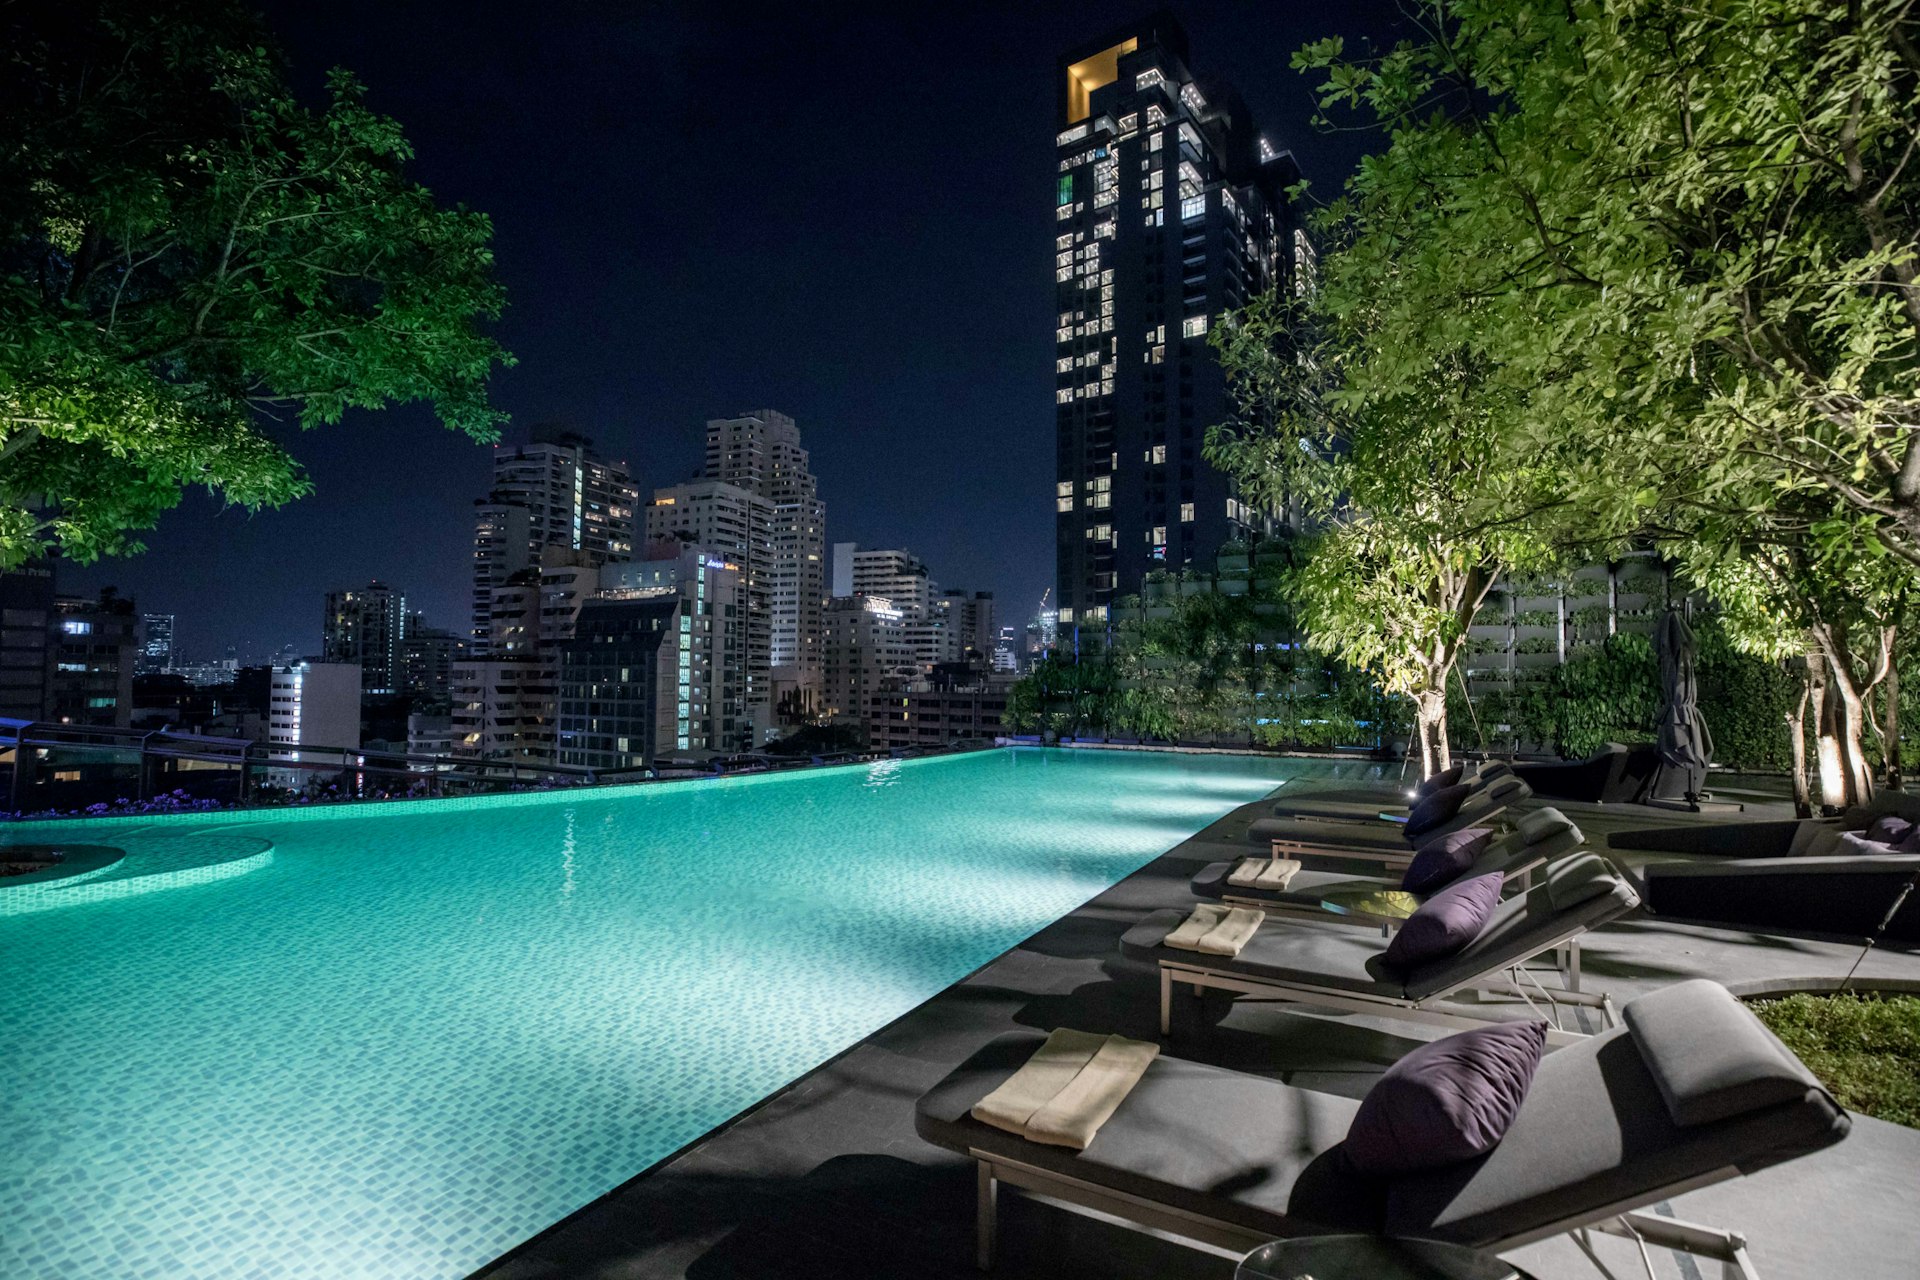 The outdoor pool at the Hyatt Regency Bangkok Sukhumvit 1